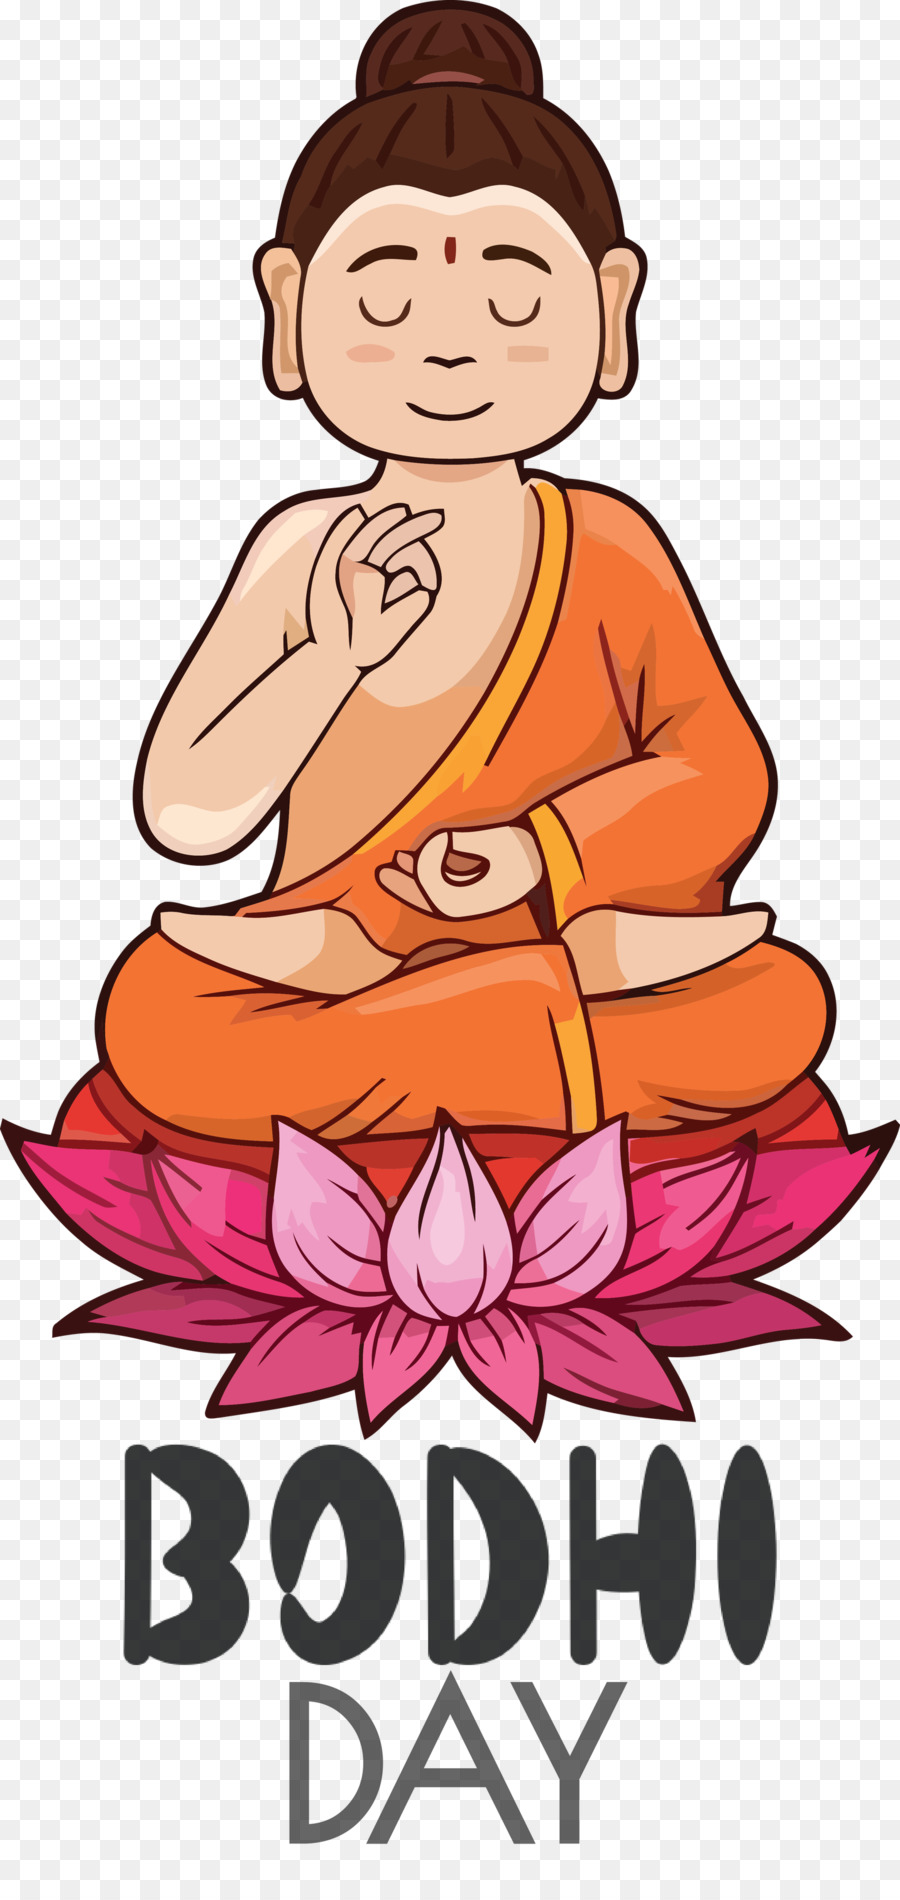 Bodhi Day Bodhi